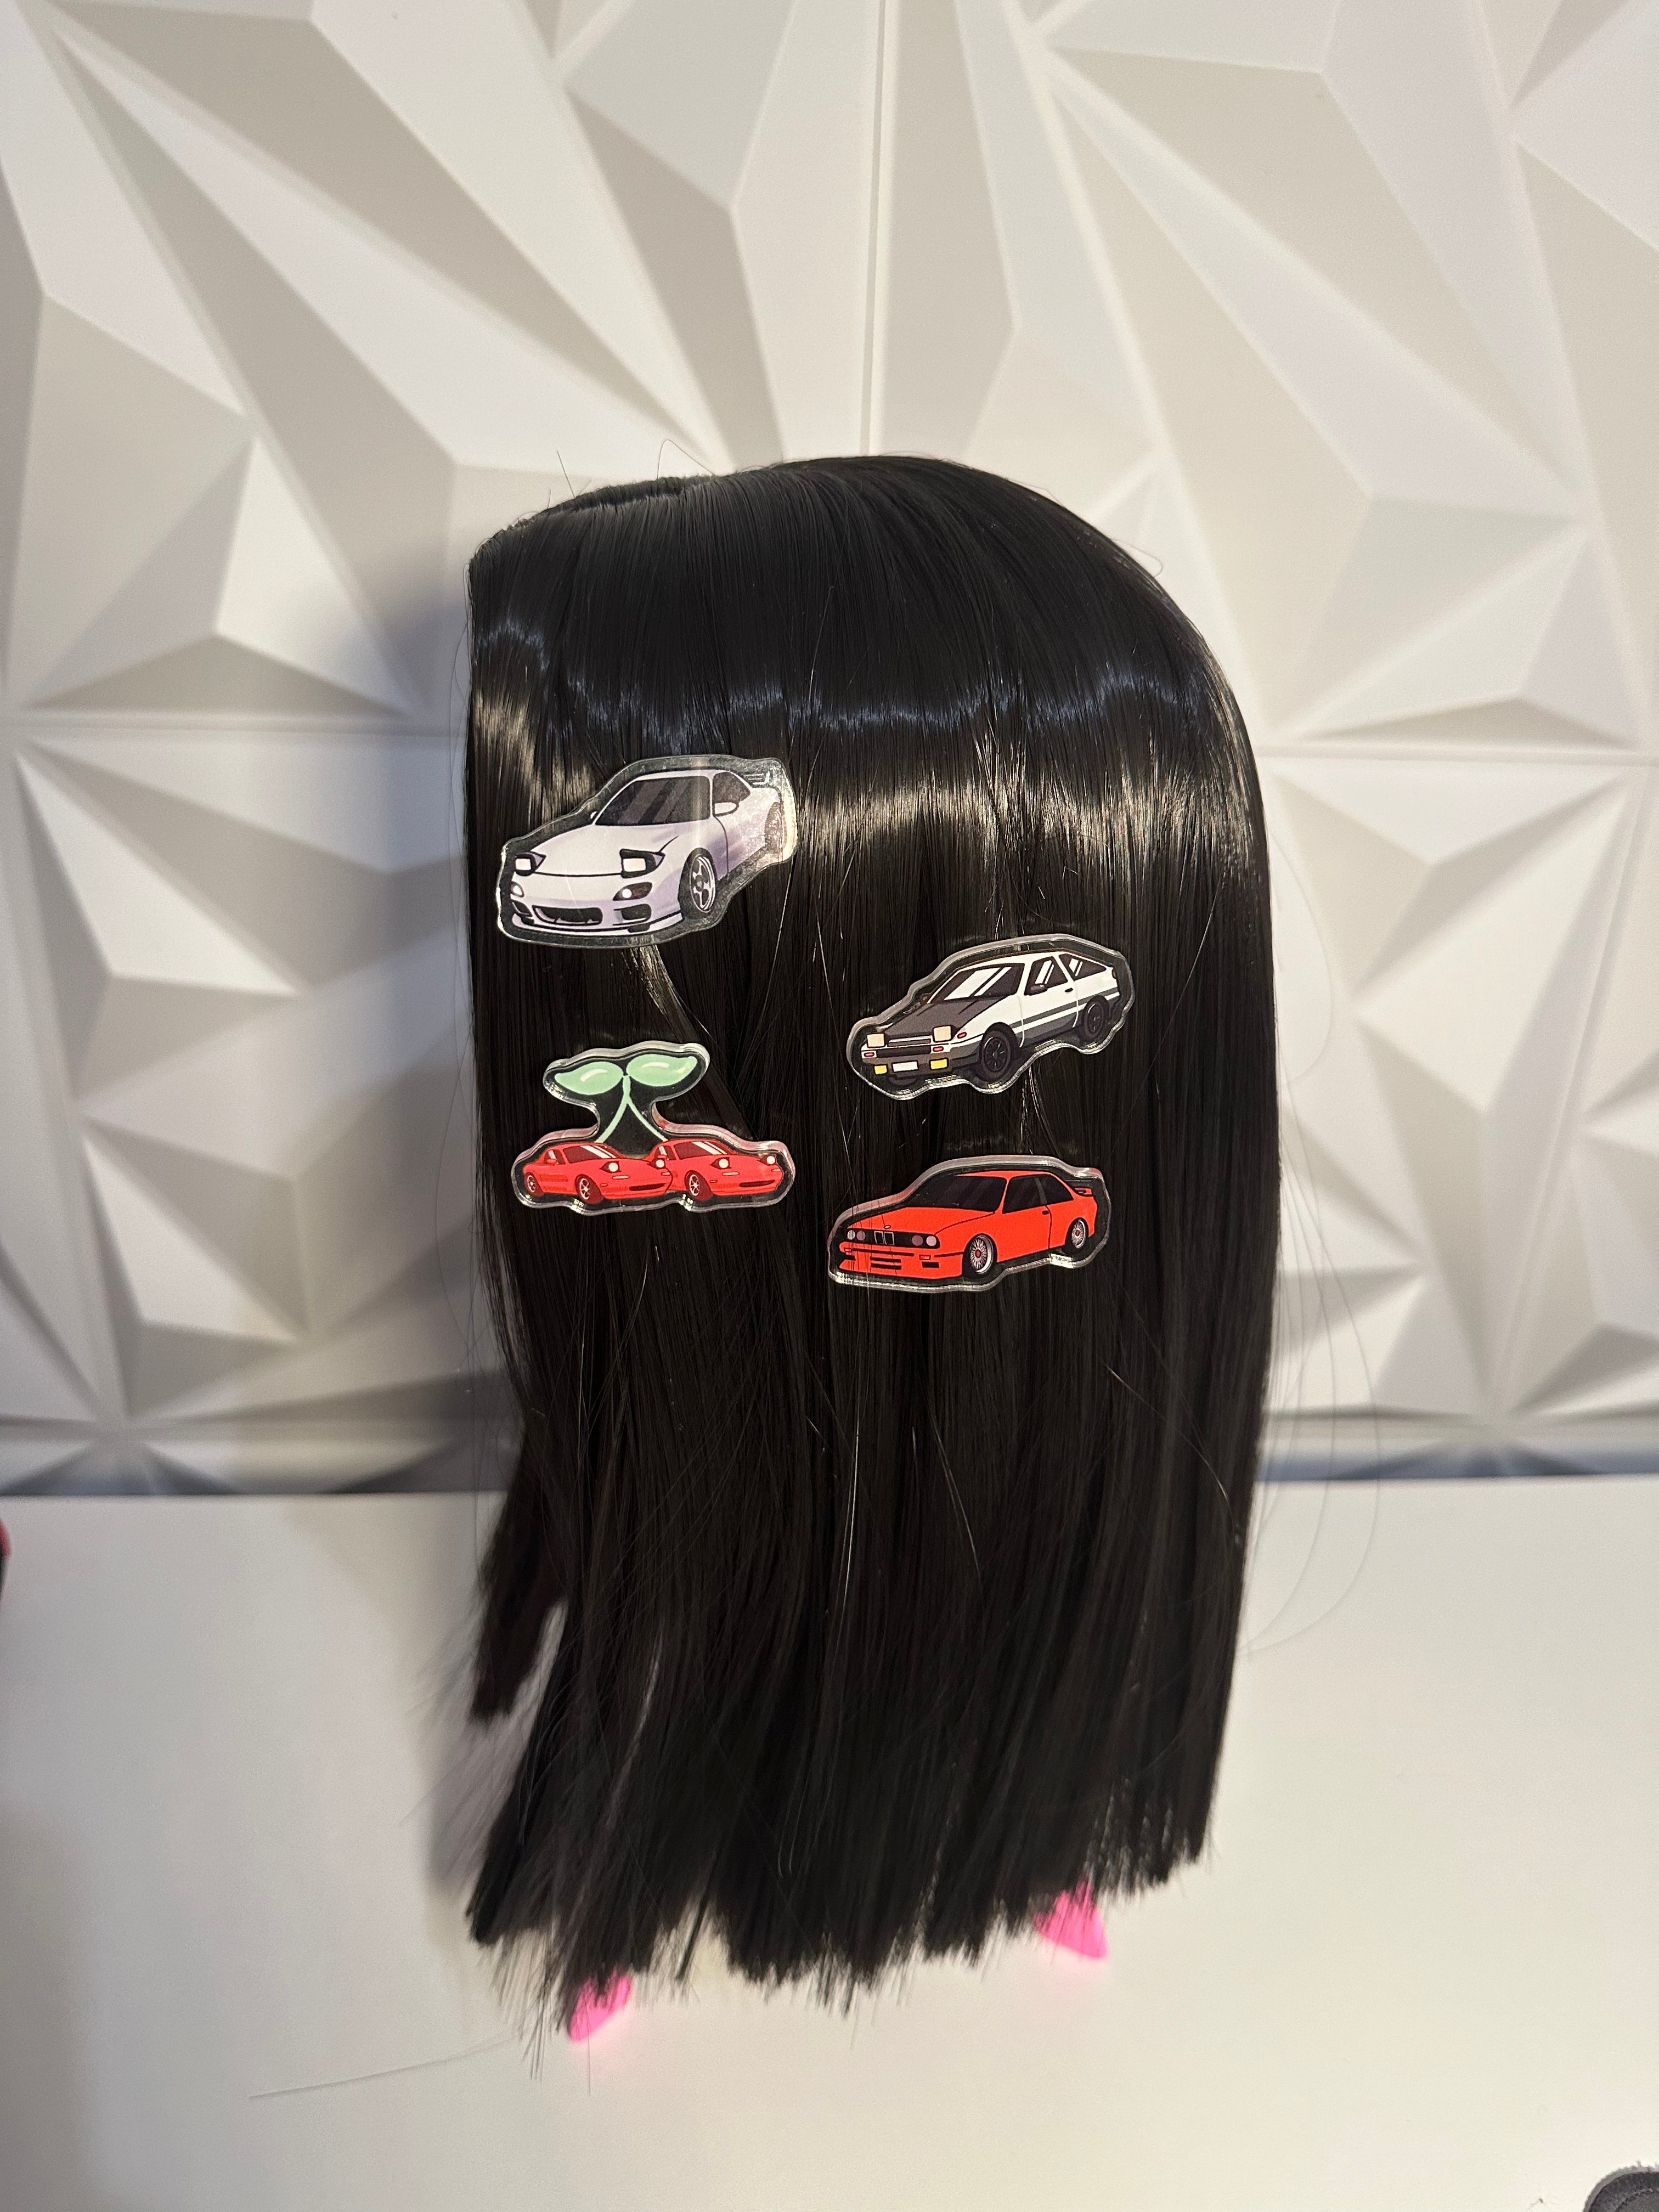 AE86 Hair Clips - 0